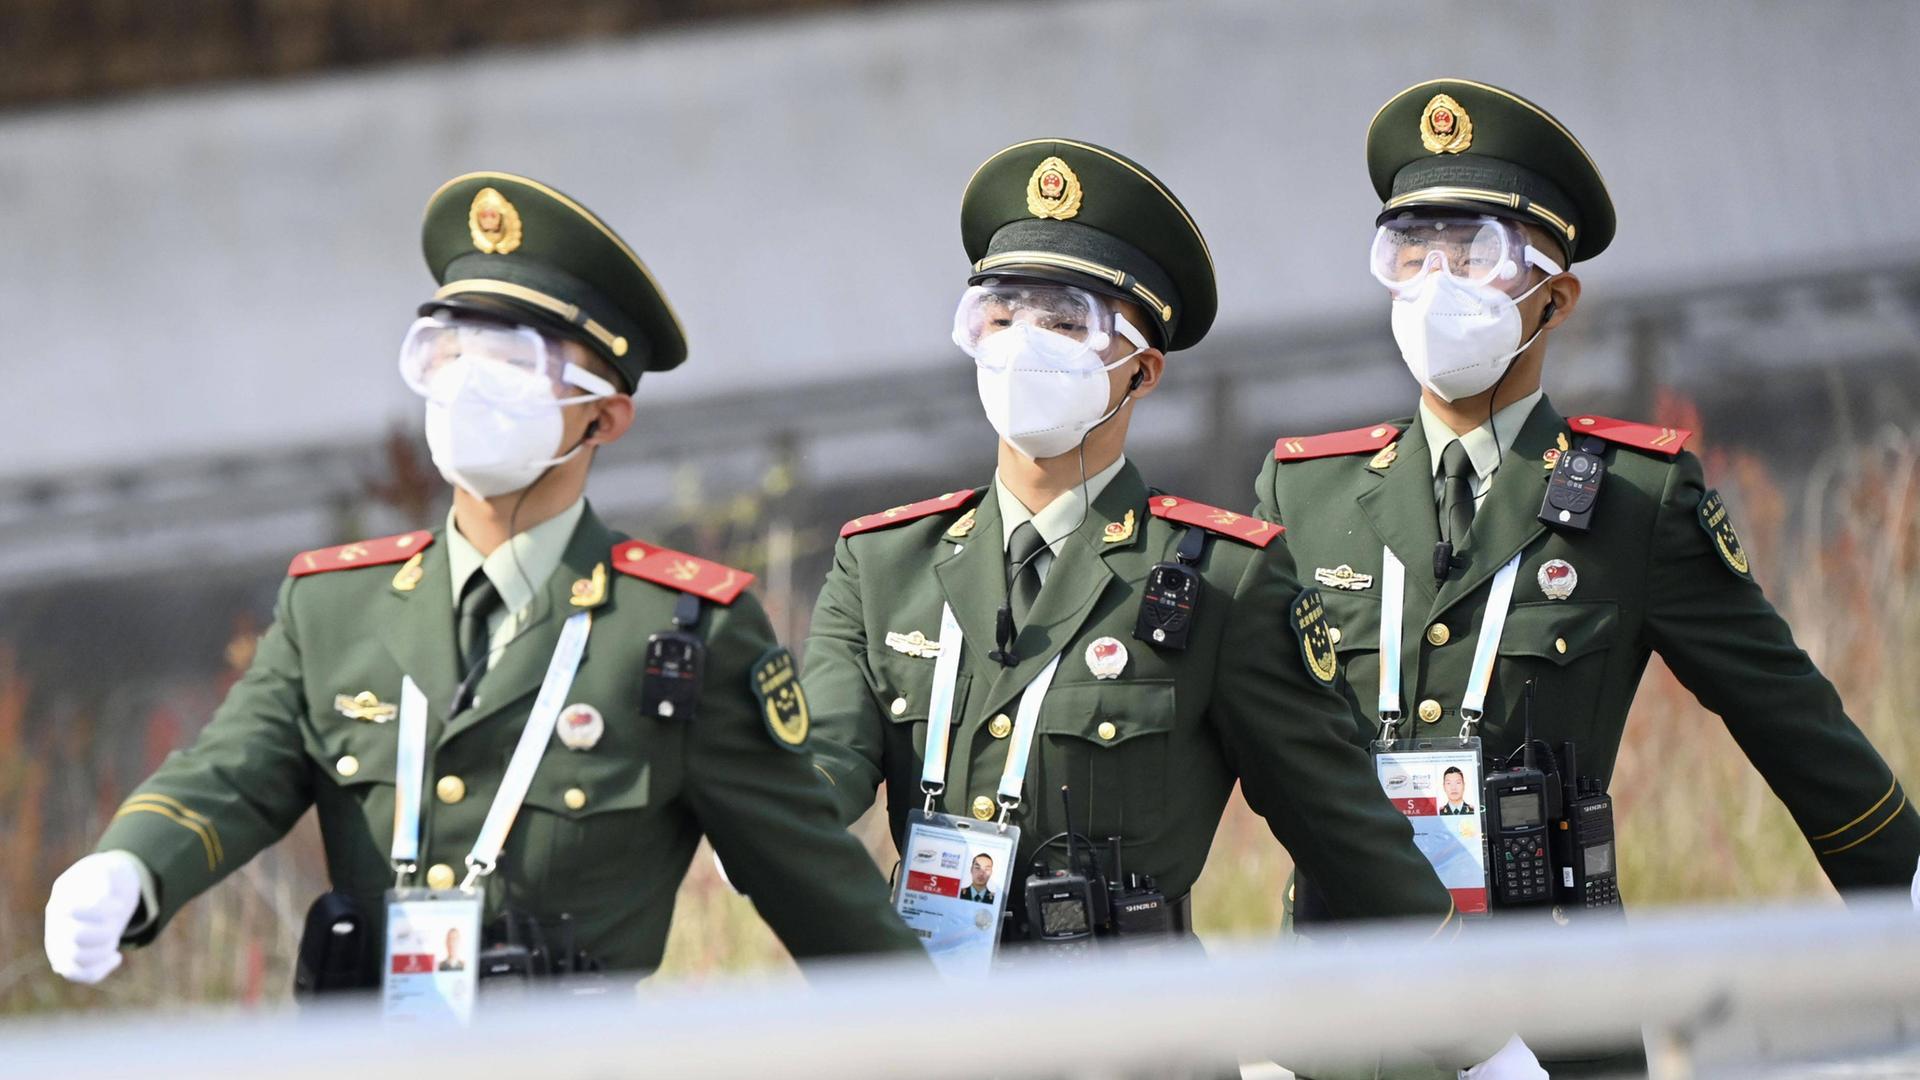 Drei Polizisten der Volksrepublik China marschieren durch ein Veranstaltungsort der Olympischen Winterspiele 2022 in Peking. Sie tragen grüne Uniformen und weiße Masken.